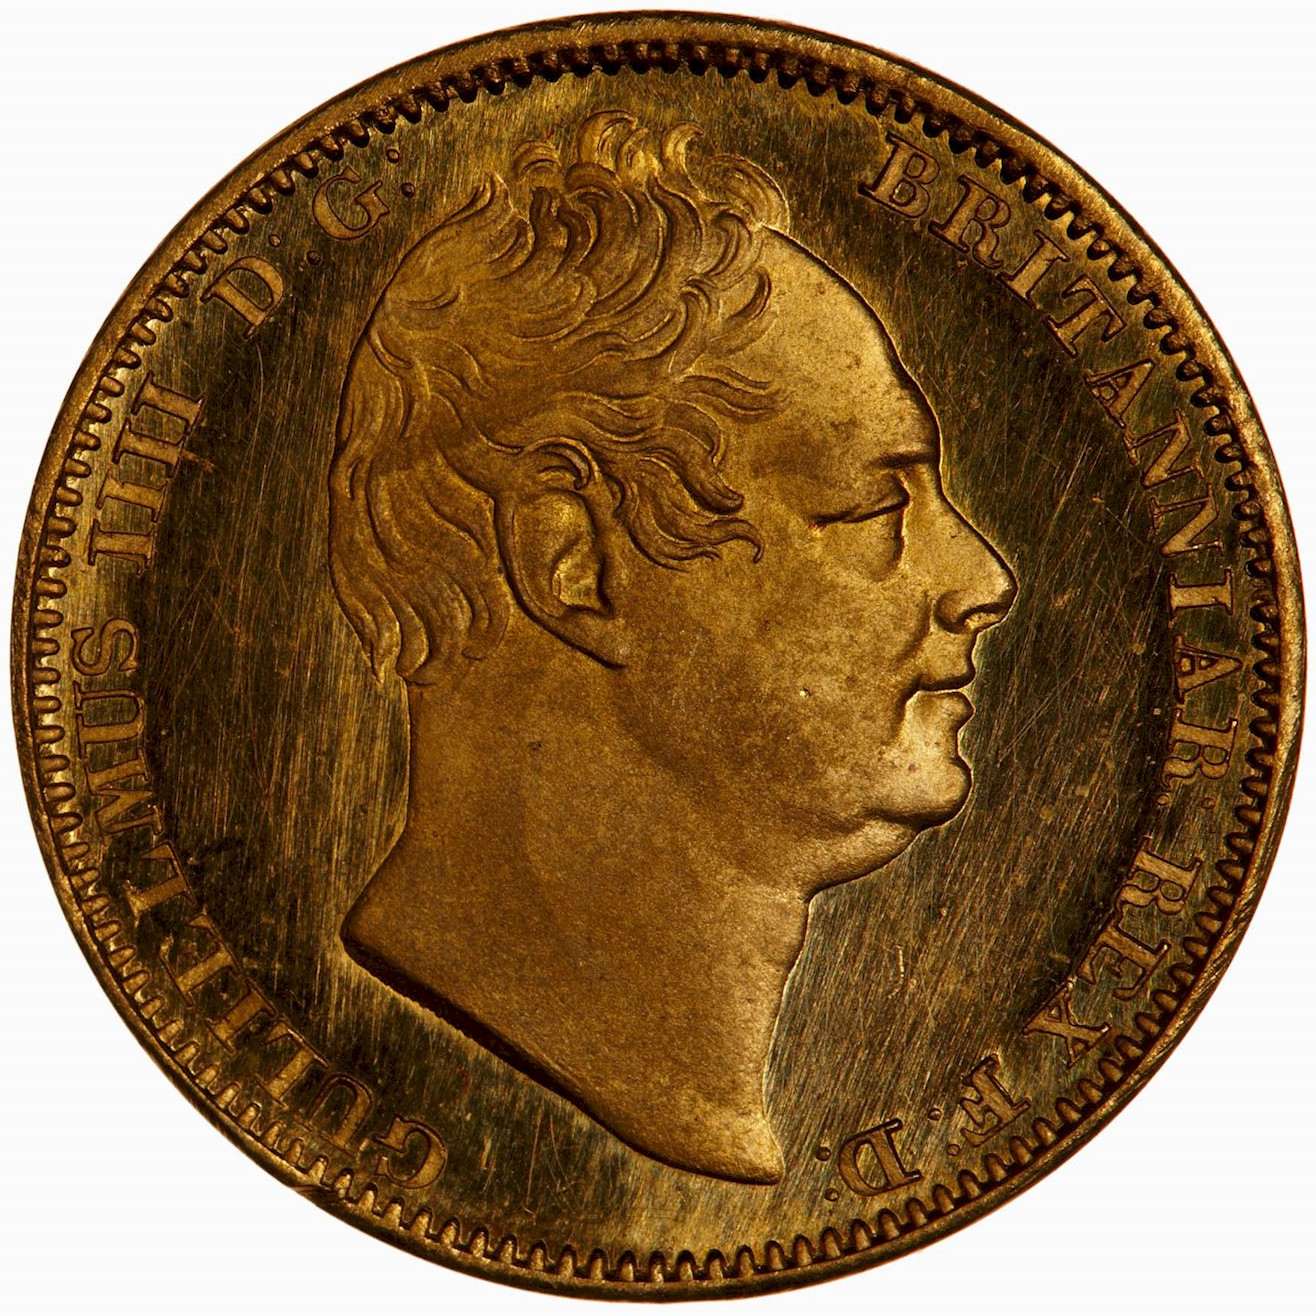 Royal sovereign coin sorter